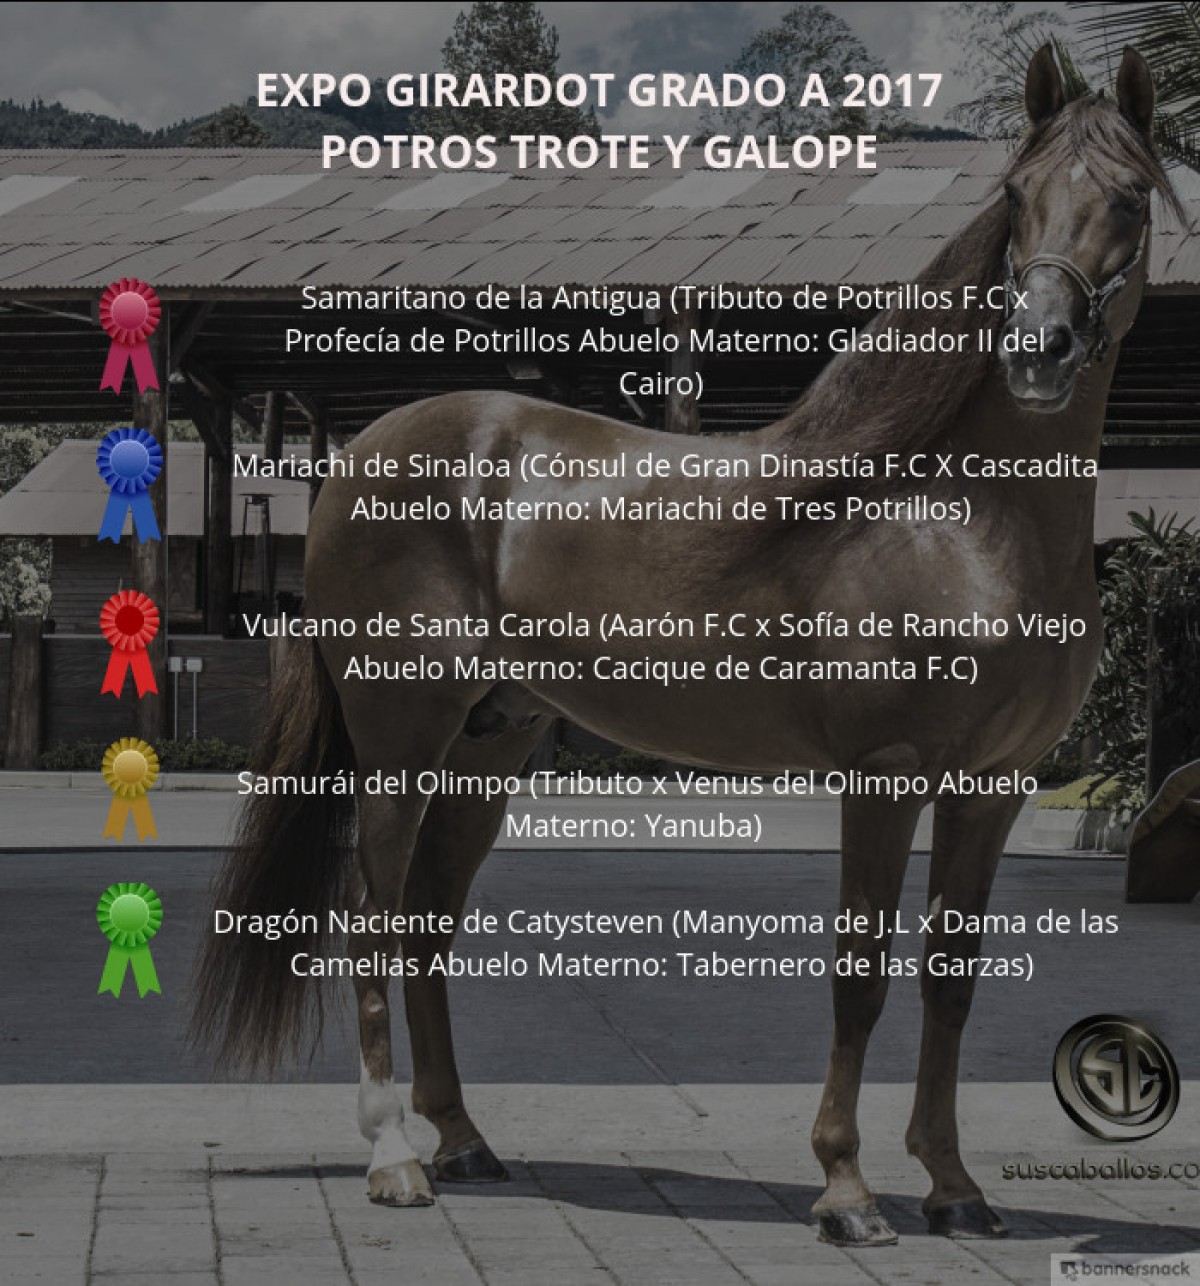 VÍDEO: Samaritano Mejor, Mariachi 1P, Potros Trote Y Galope, Expo Girardot 2017